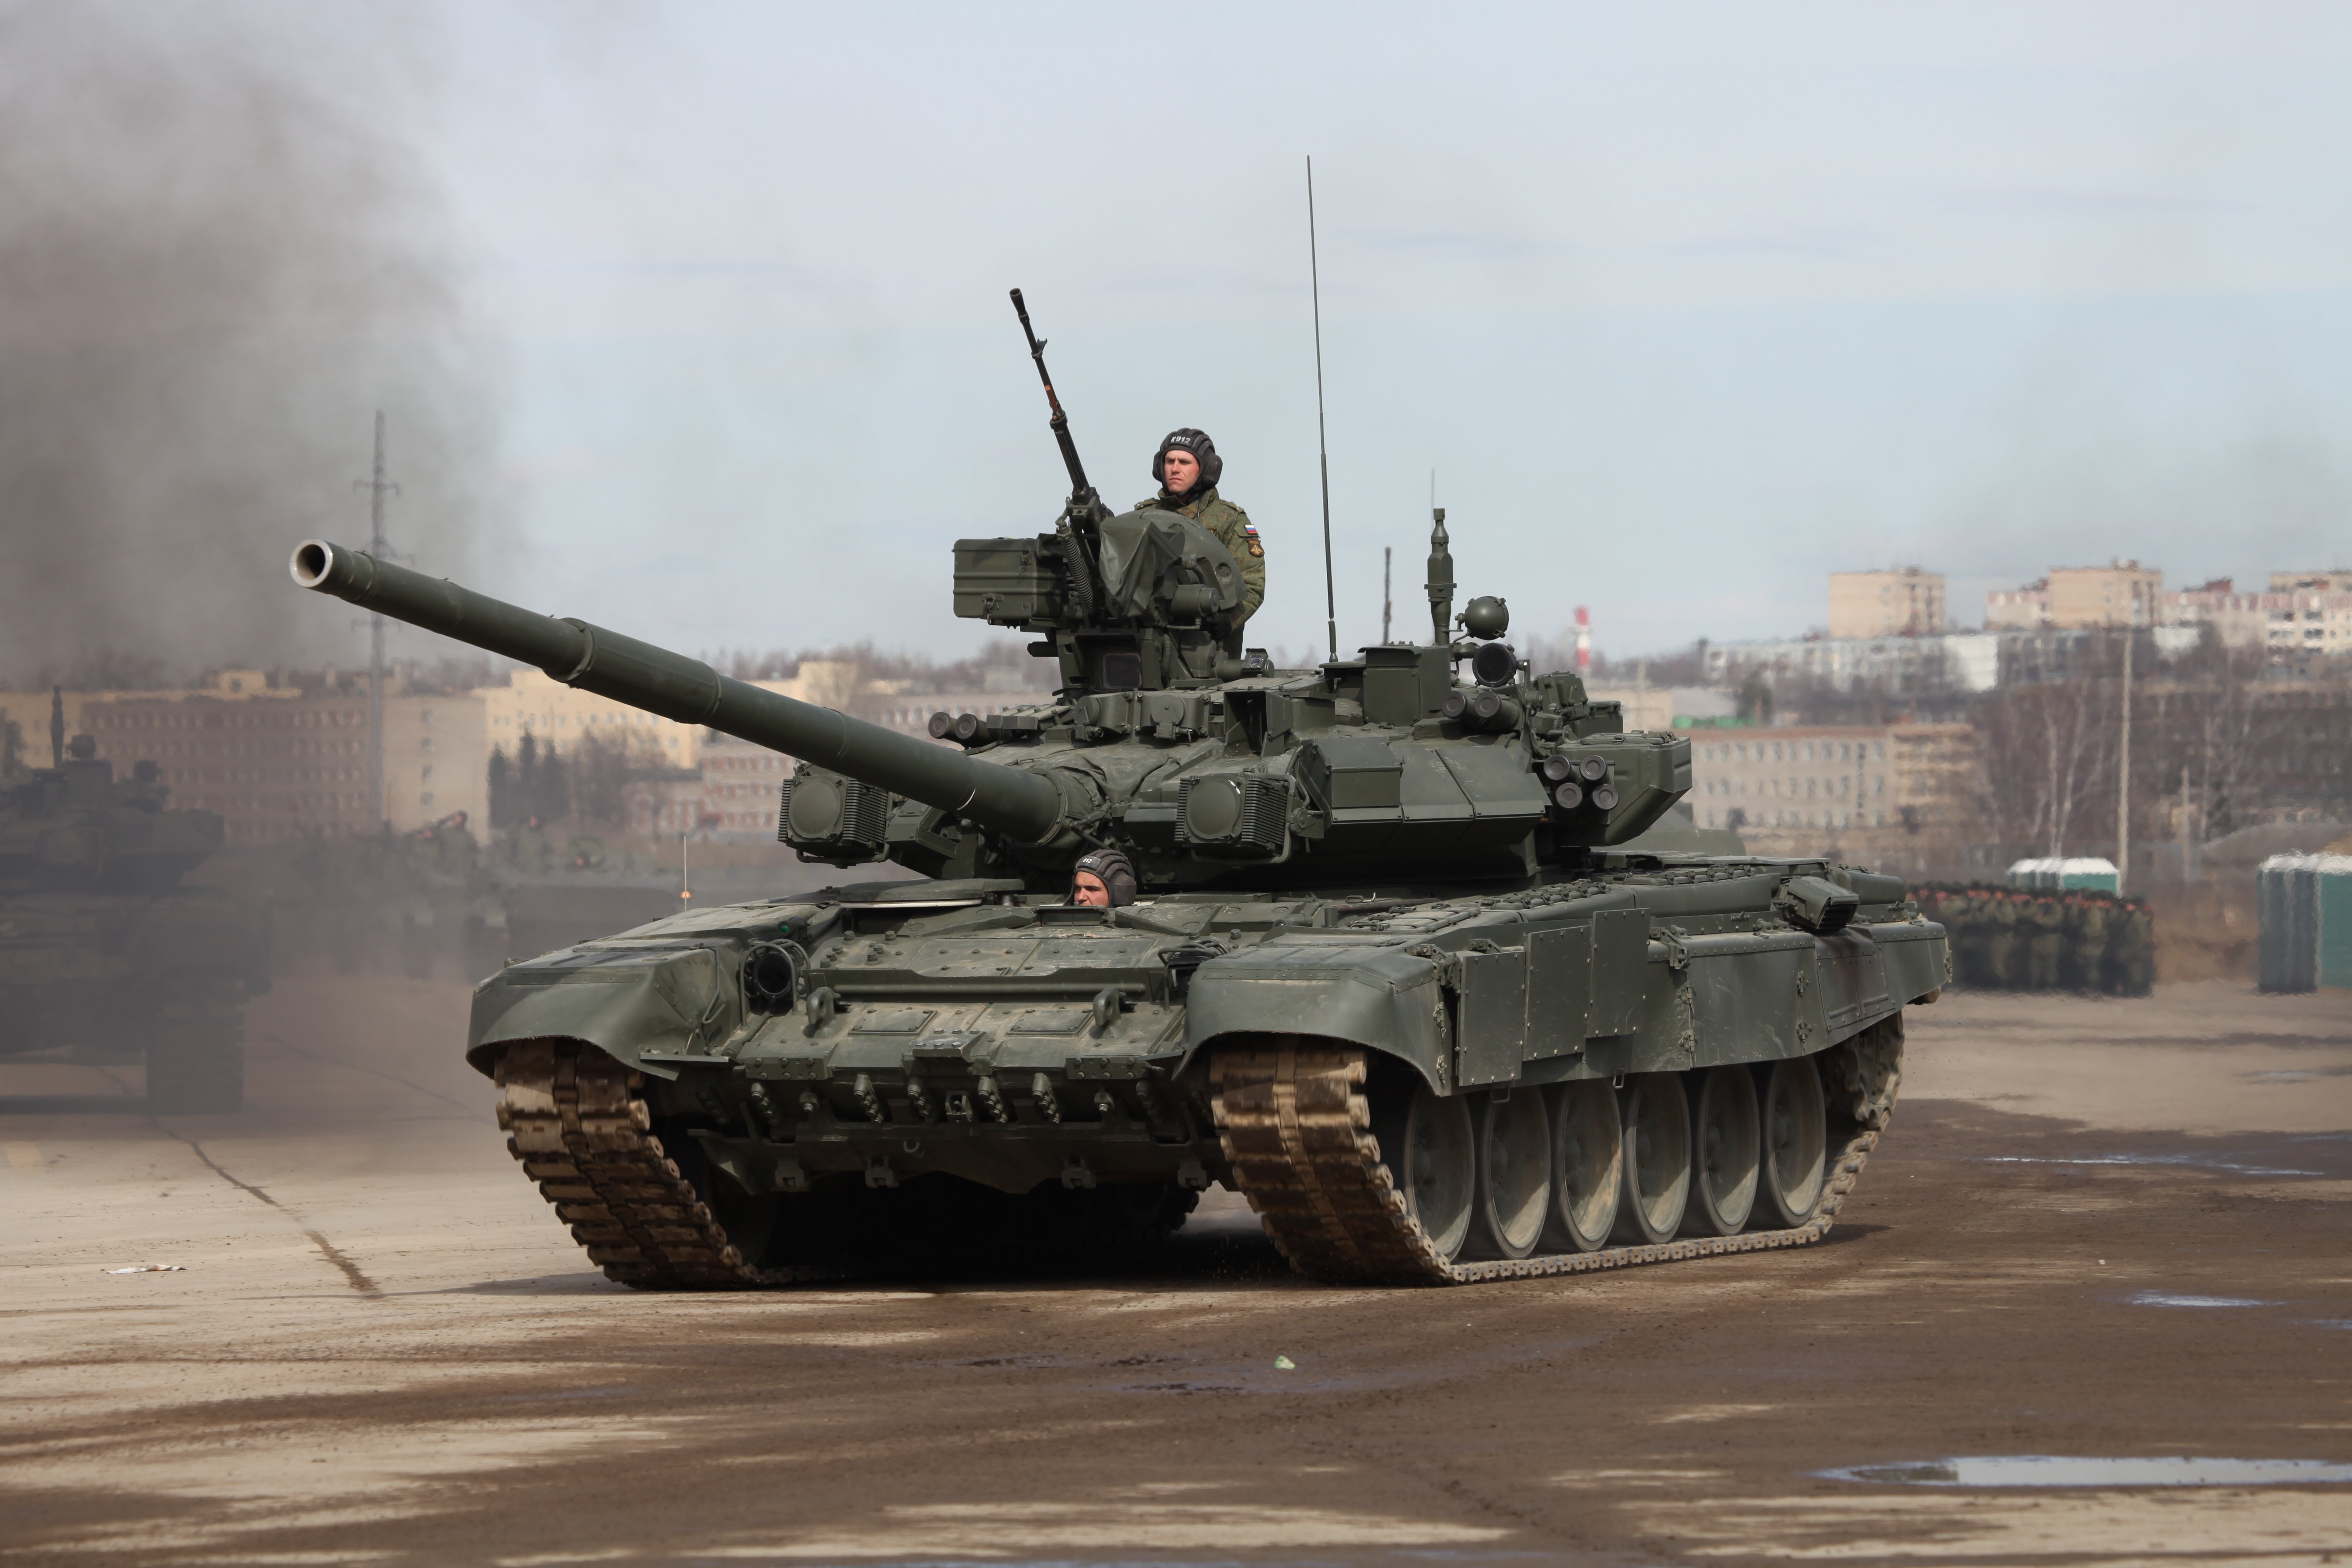 main battle tank of ww2 russian